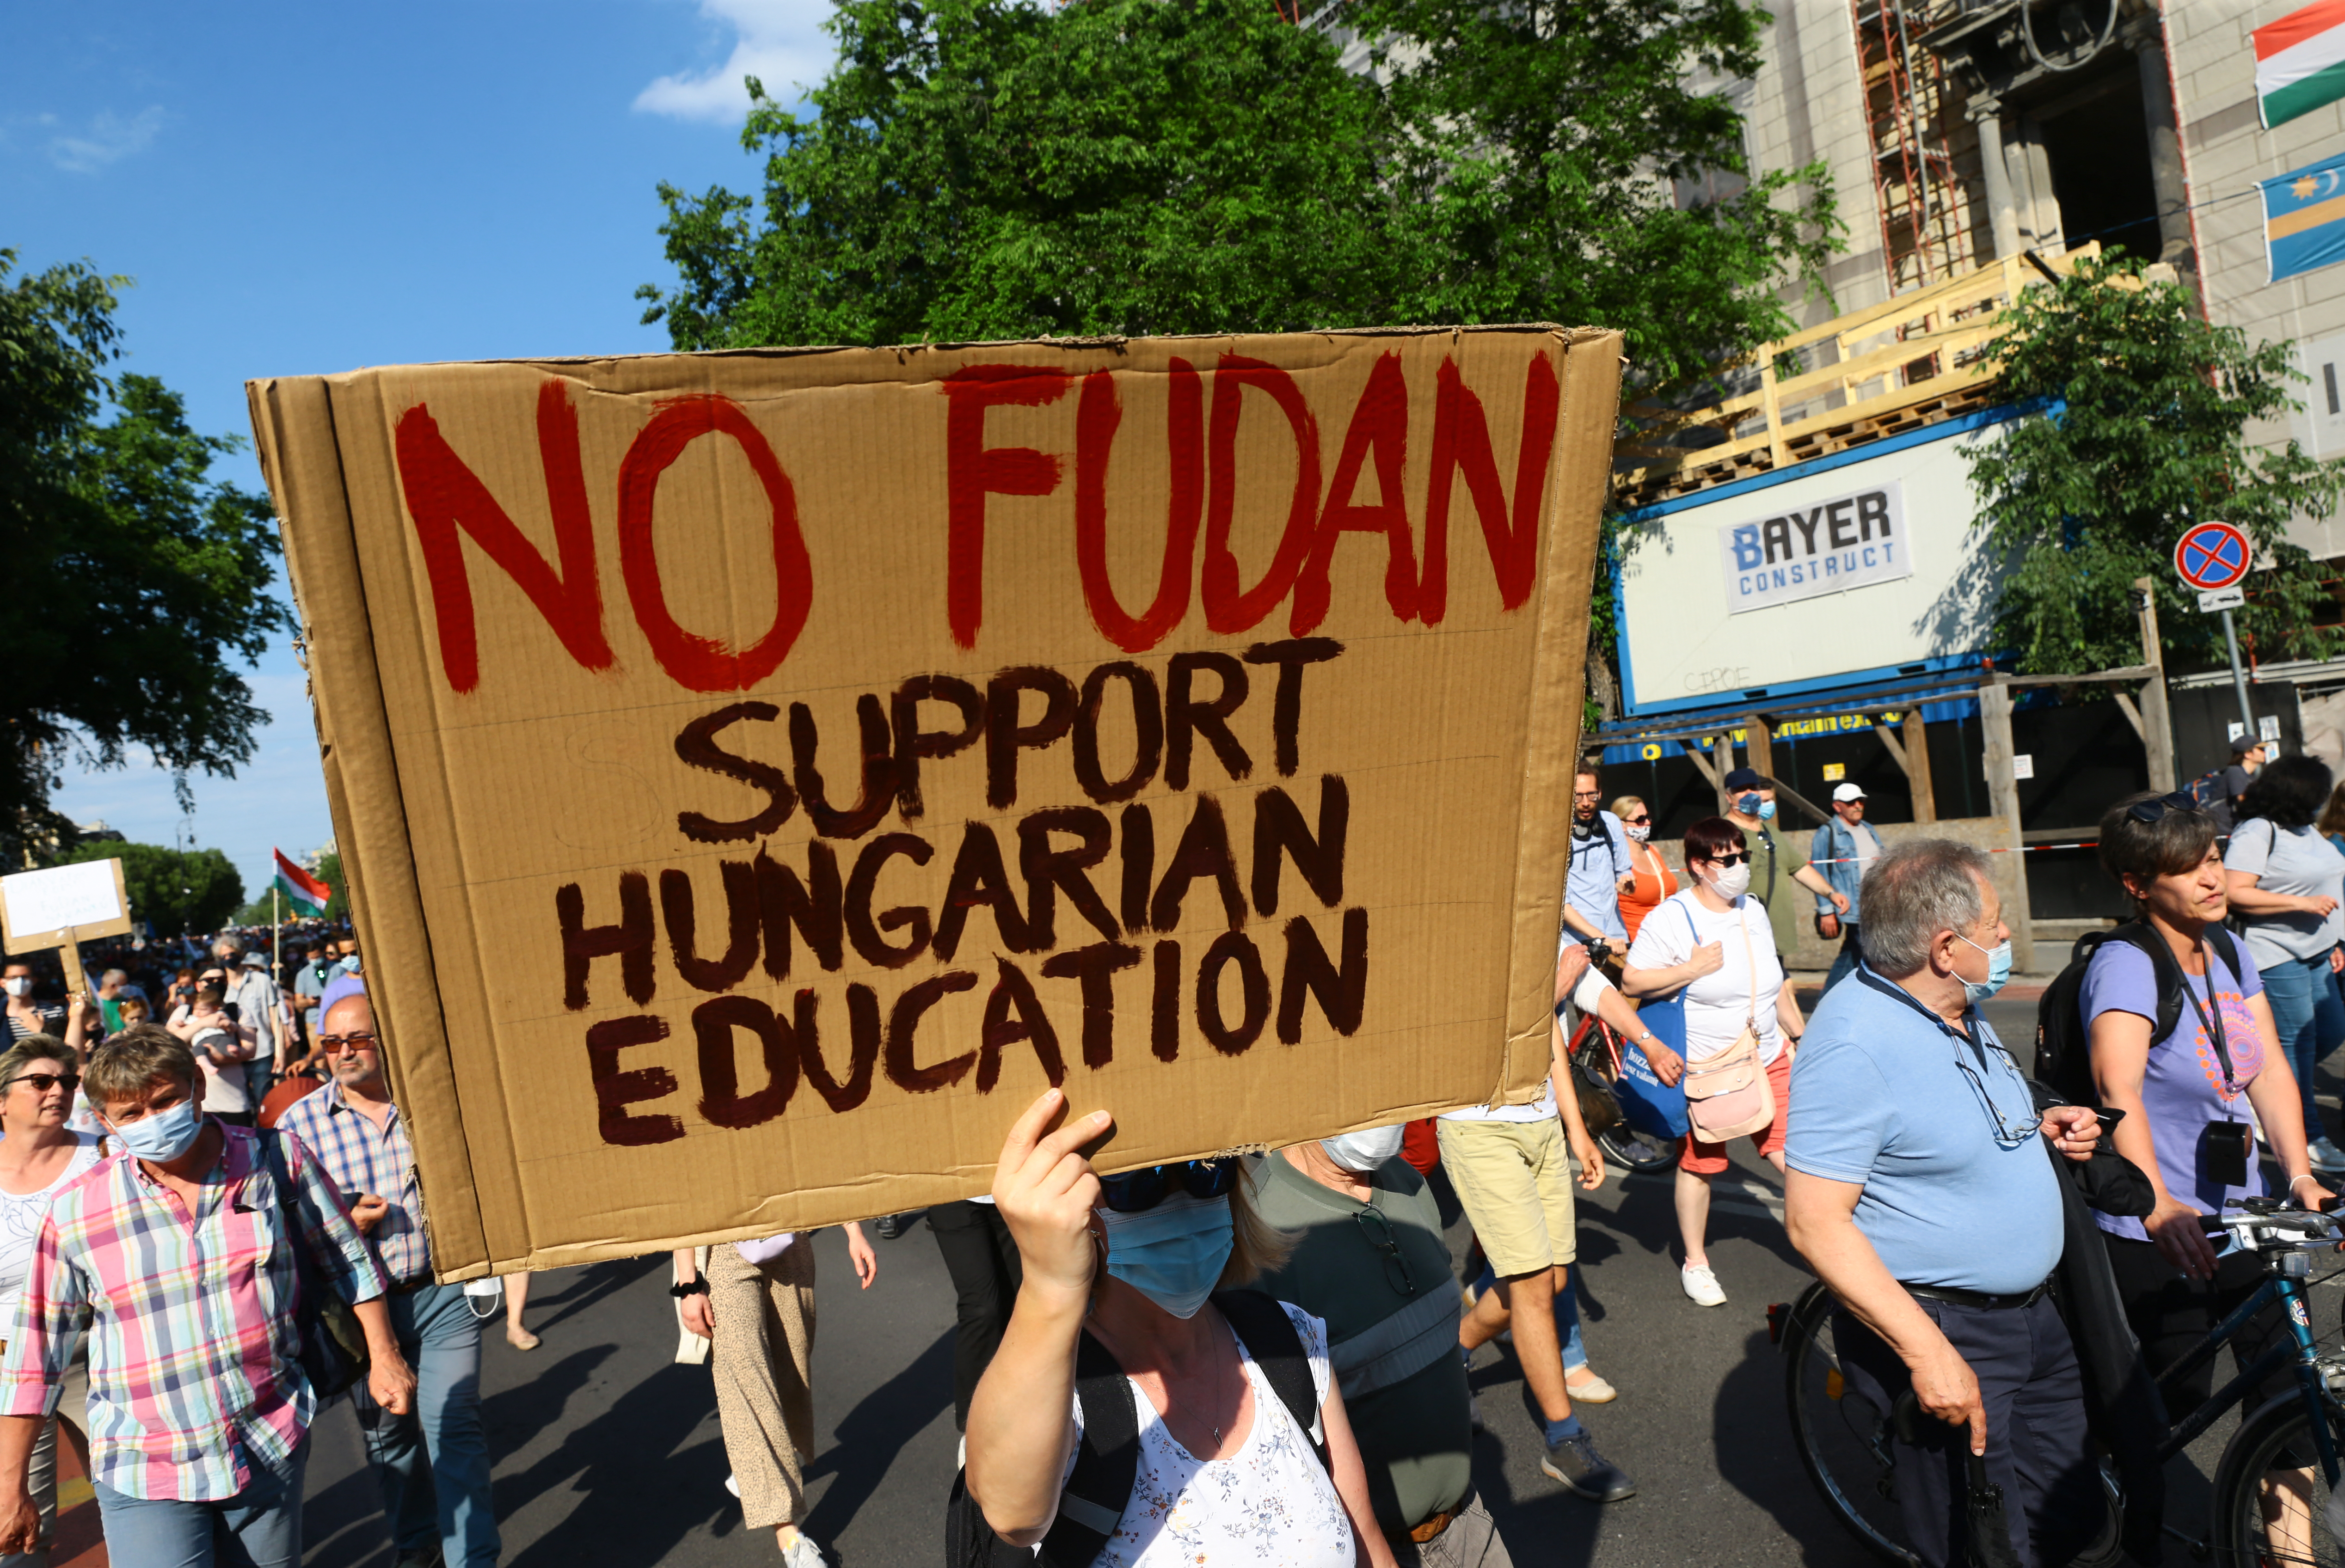 A kormány legfrissebb válasza szerint még nem tettek le a Fudan Egyetem budapesti kampuszának felépítéséről